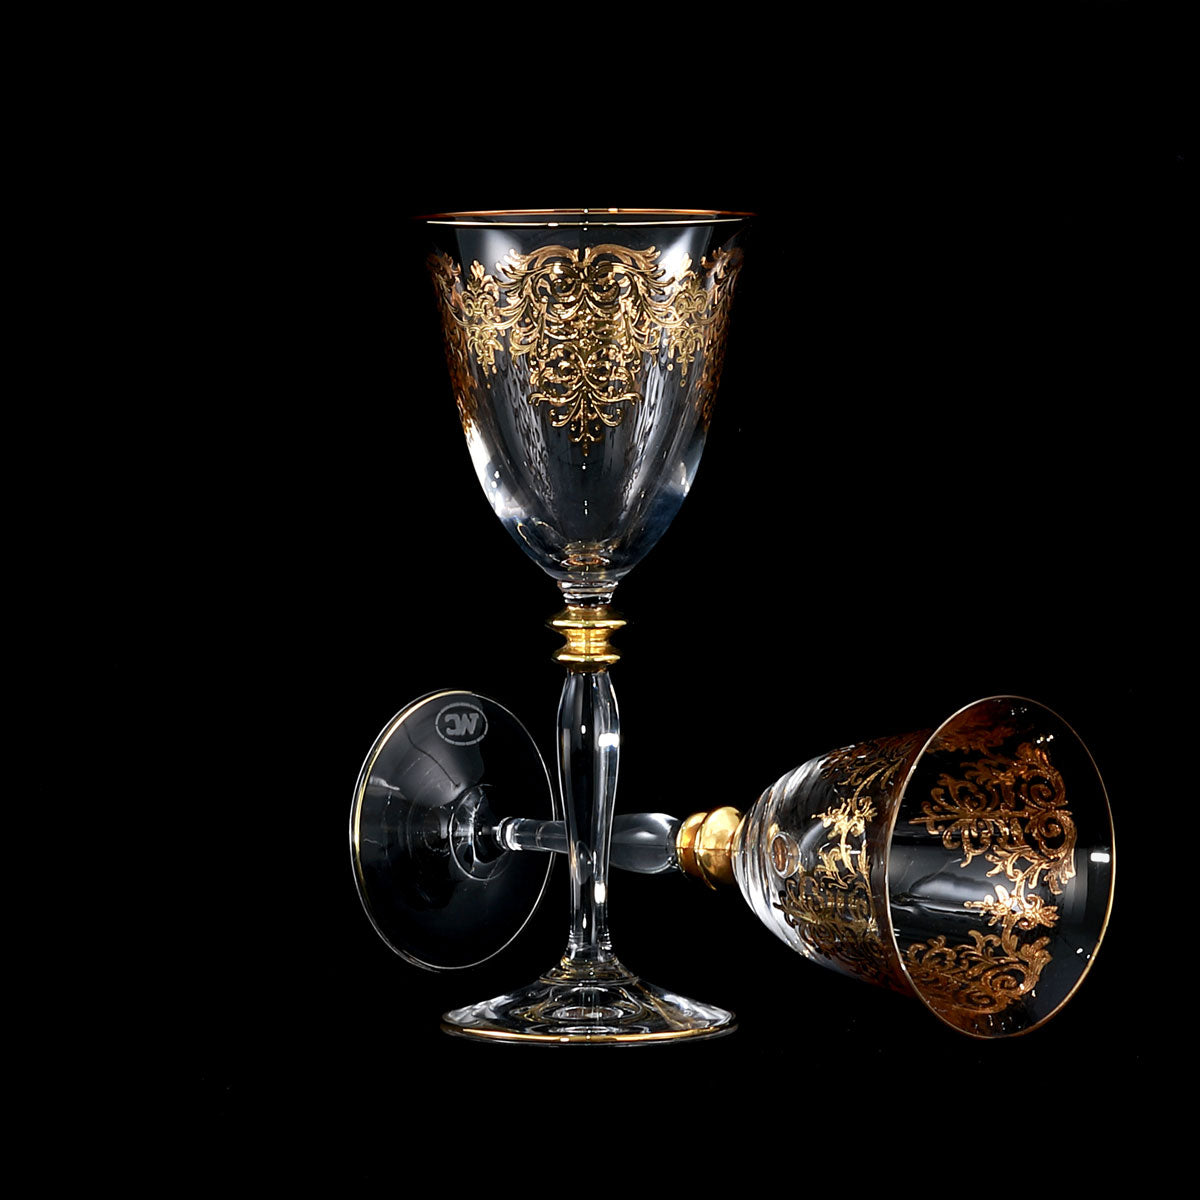 Servizio piatti e bicchieri con la stessa decorazione in oro con dame - Armonia